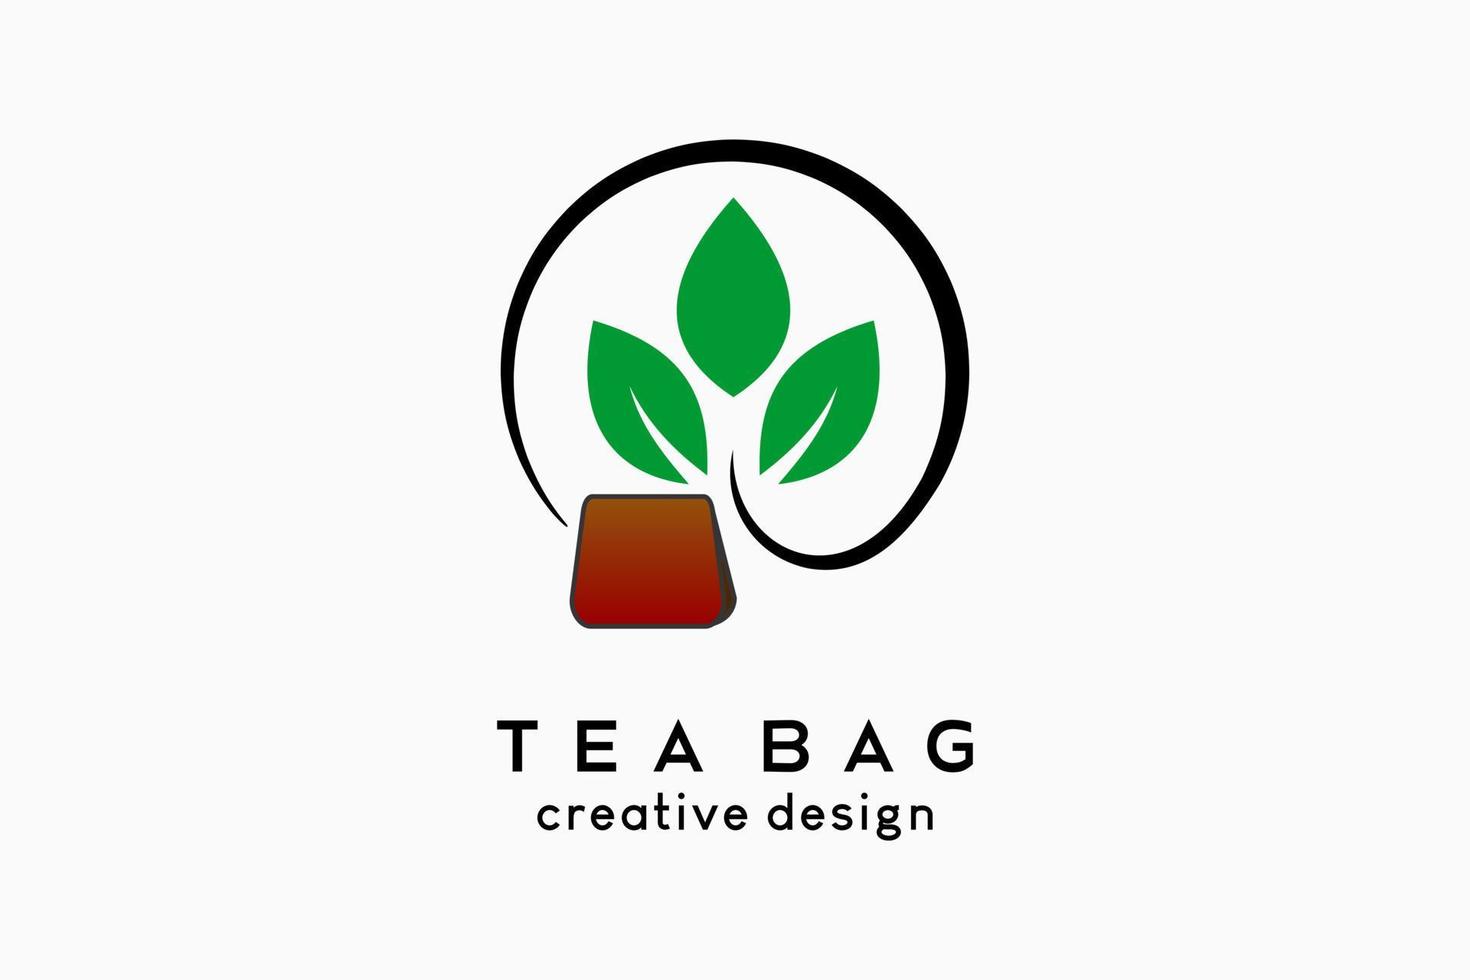 design de logotipo de saquinho de chá, ícone de folha de chá combinado com ícone de saquinho de chá em um círculo. ilustração em vetor logotipo para negócios de bebidas.